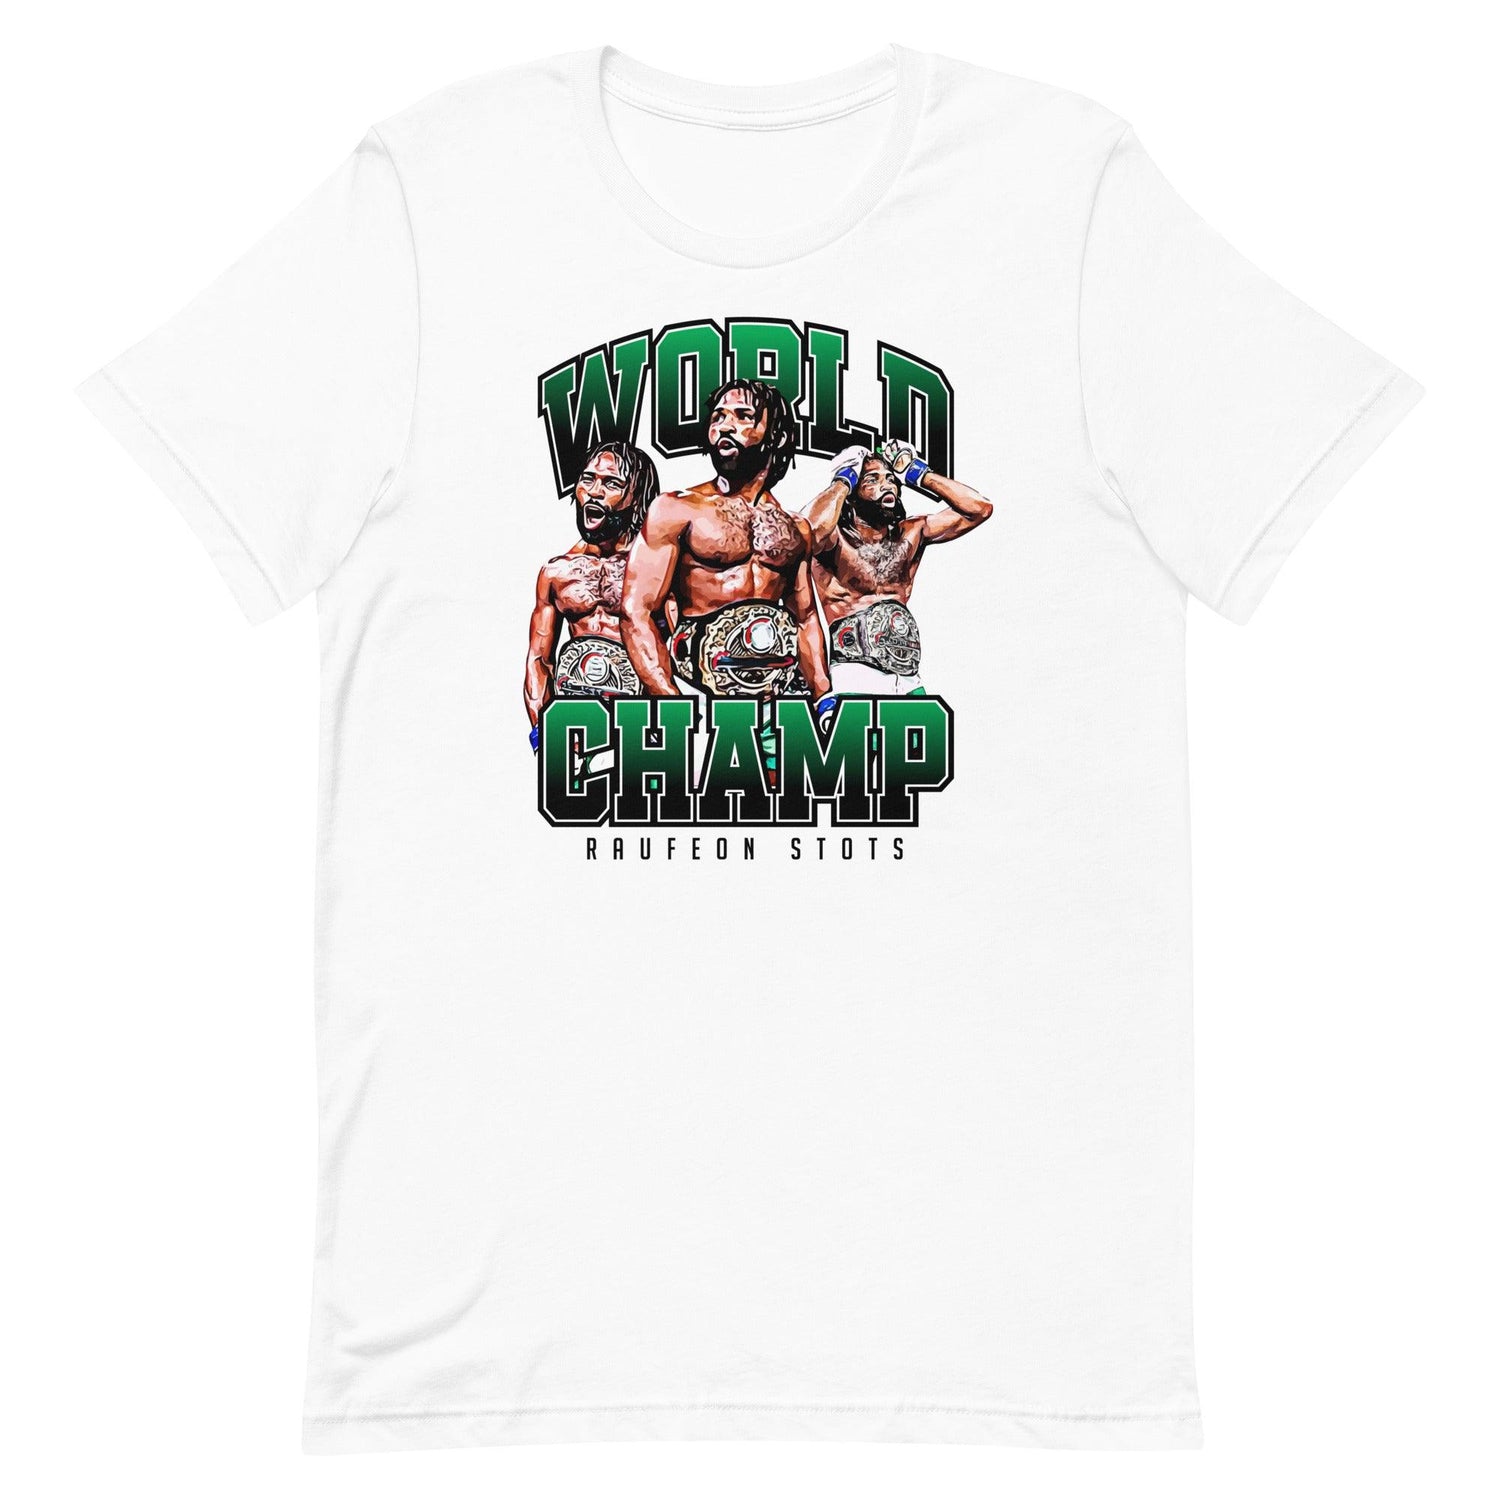 Raufeon Stots "World Champ" t-shirt - Fan Arch